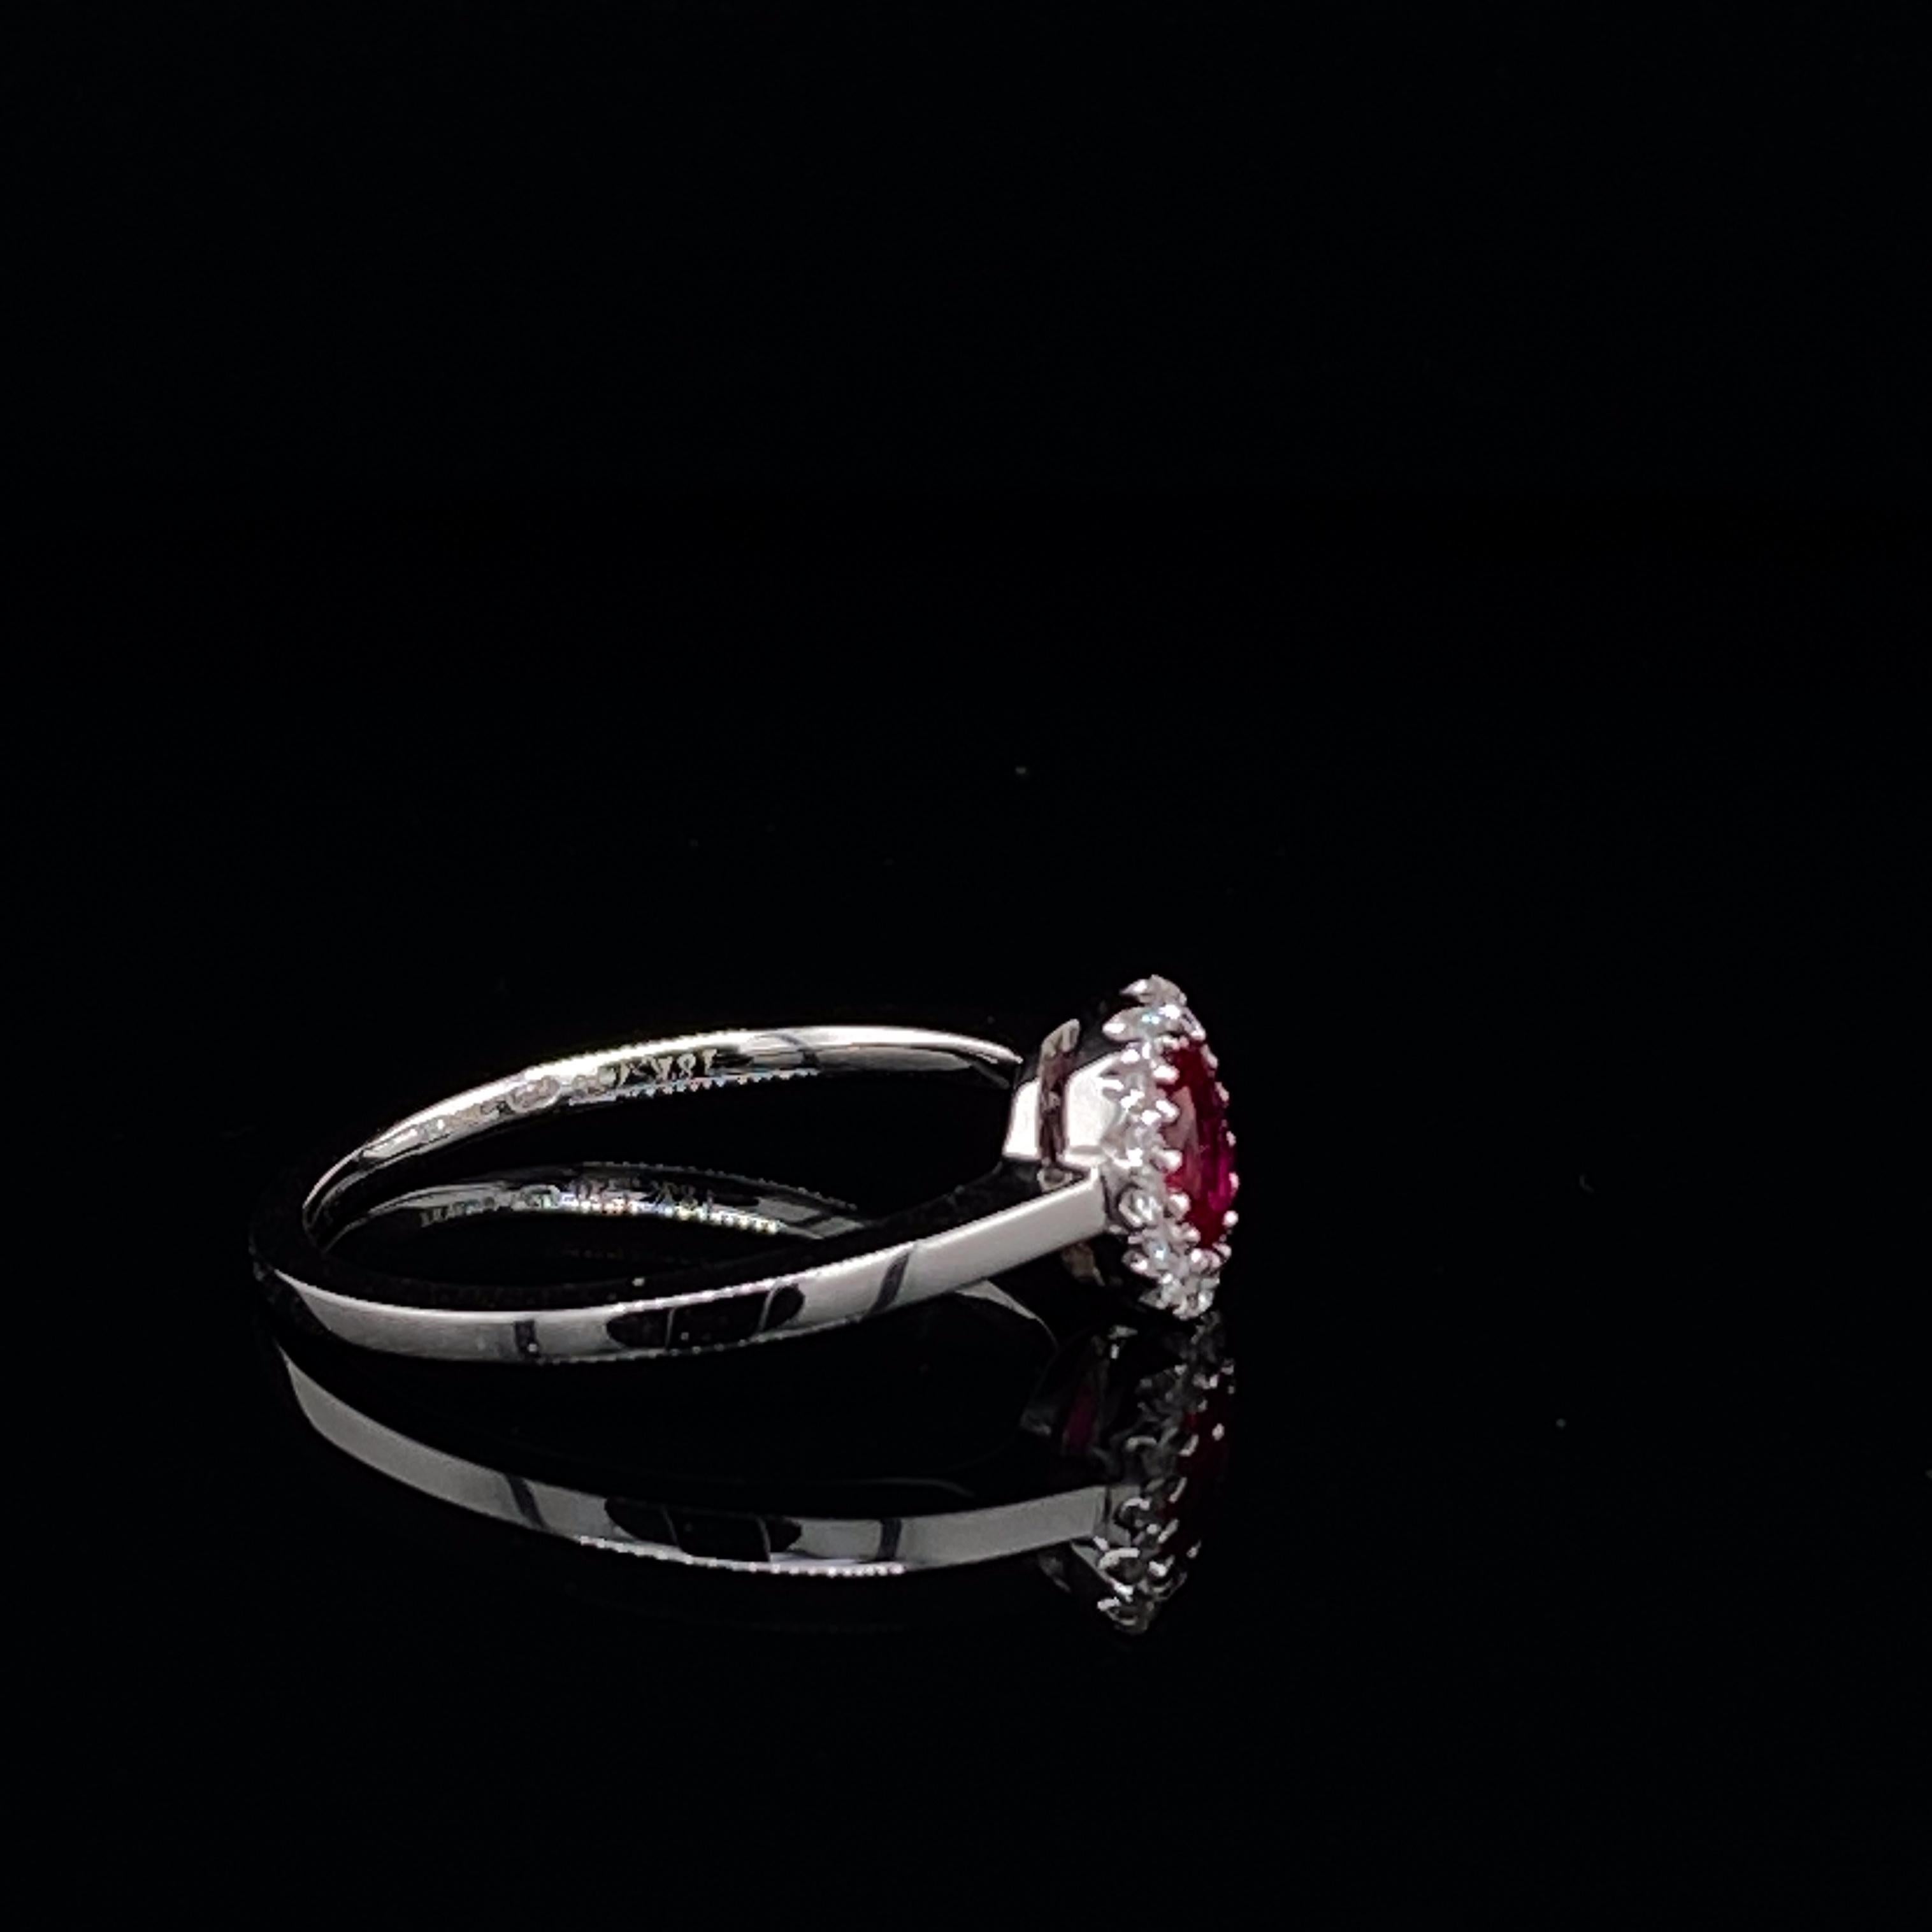 Bague à grappe ovale en or blanc 18 carats, ornée de rubis et de diamants.

Le rubis ovale, vif et brillant, est serti au centre d'un halo de seize diamants ronds de taille brillant.

Il s'agit d'une très belle pièce qui conviendrait aussi bien à